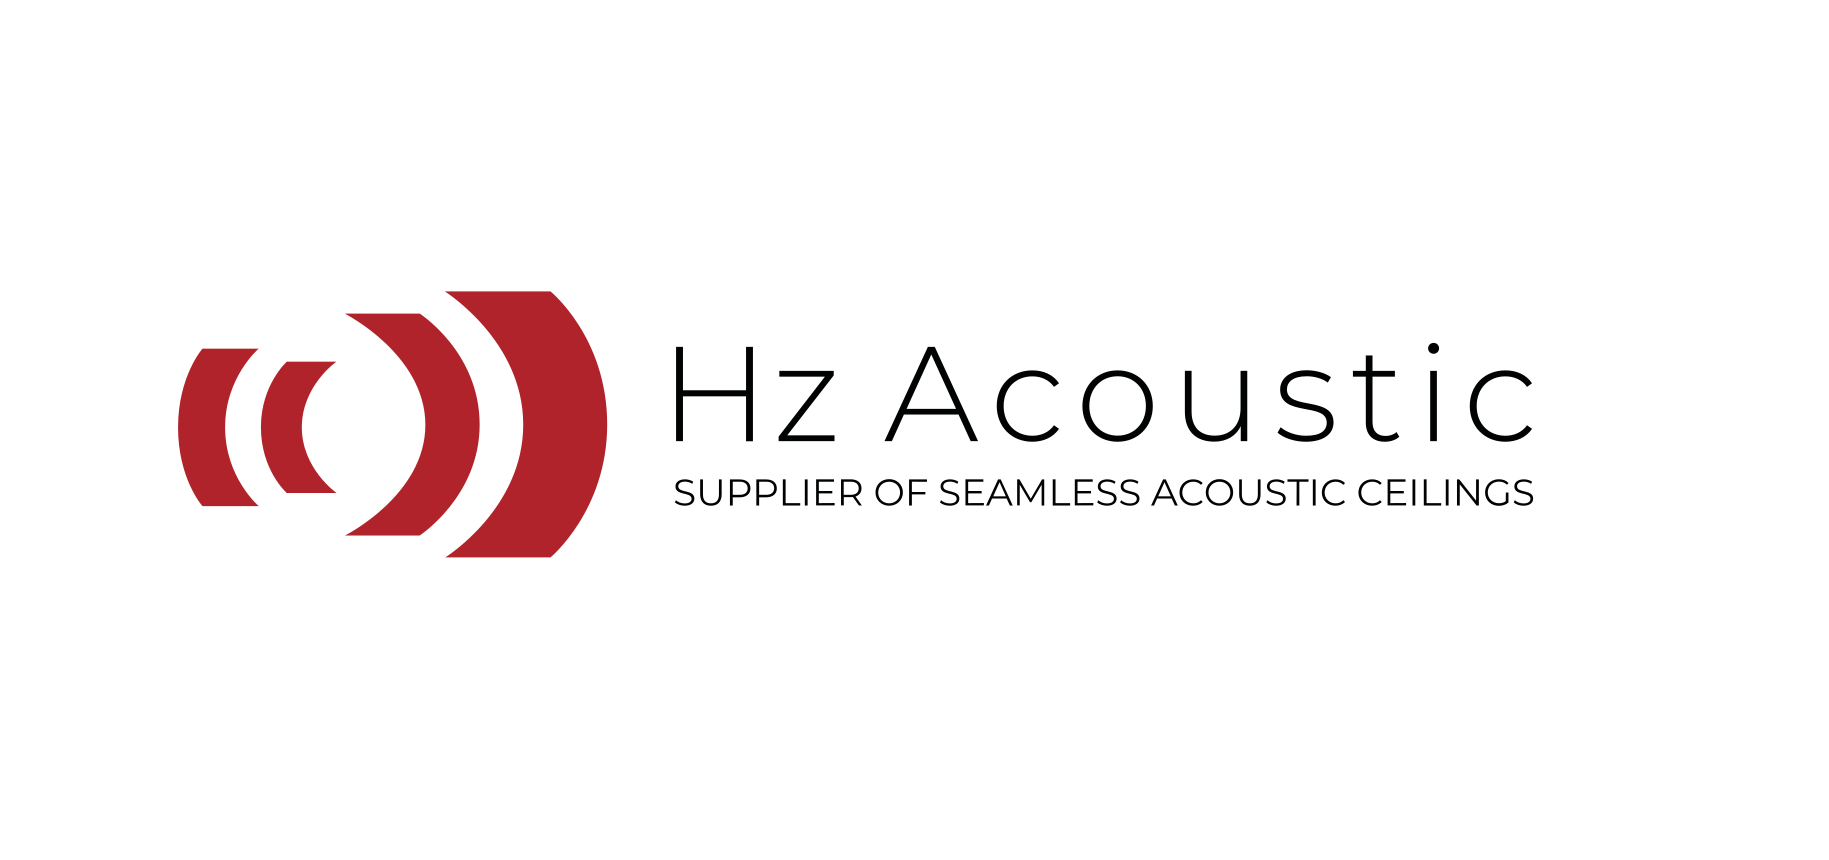 Hz Acoustic